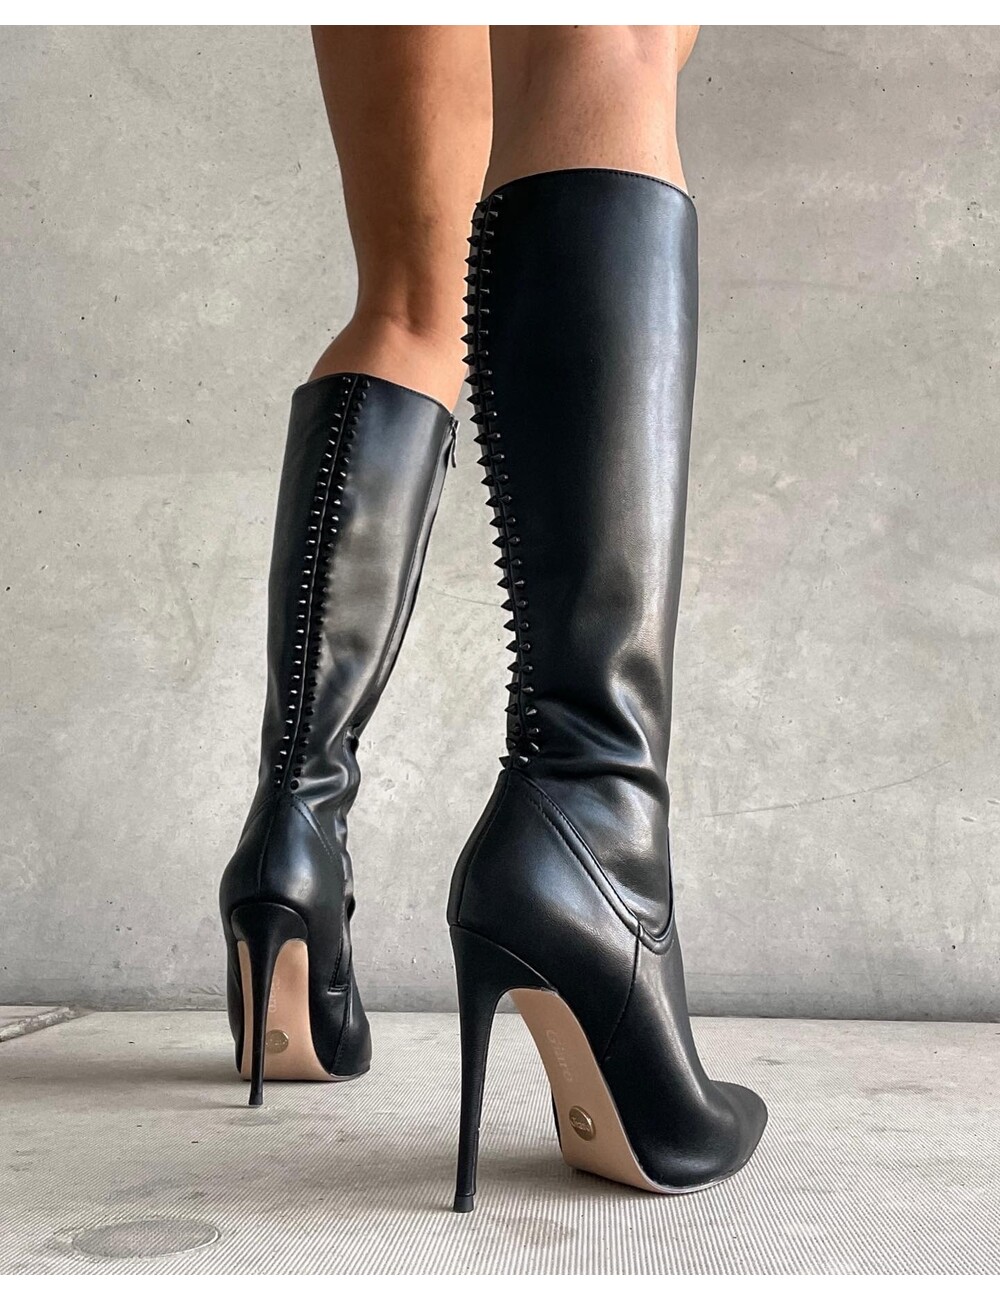 Gabriela in the Mingle black matte - Shoebidoo Shoes | Giaro high heels